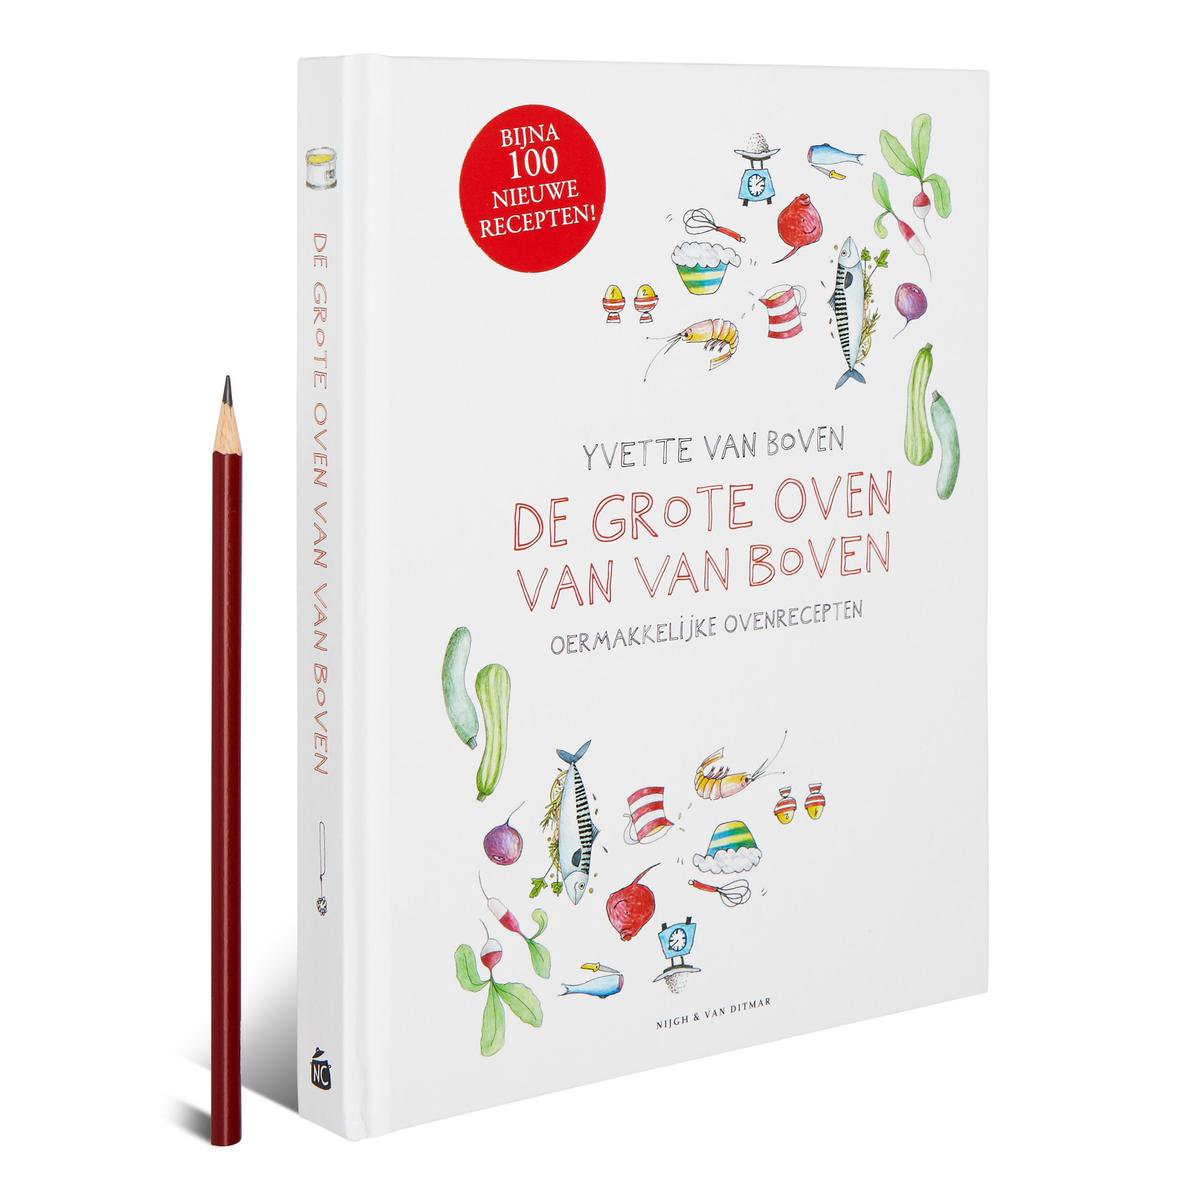 De grote oven van Van Boven, Yvette van Boven | 9789038805962 | Boeken |  bol.com